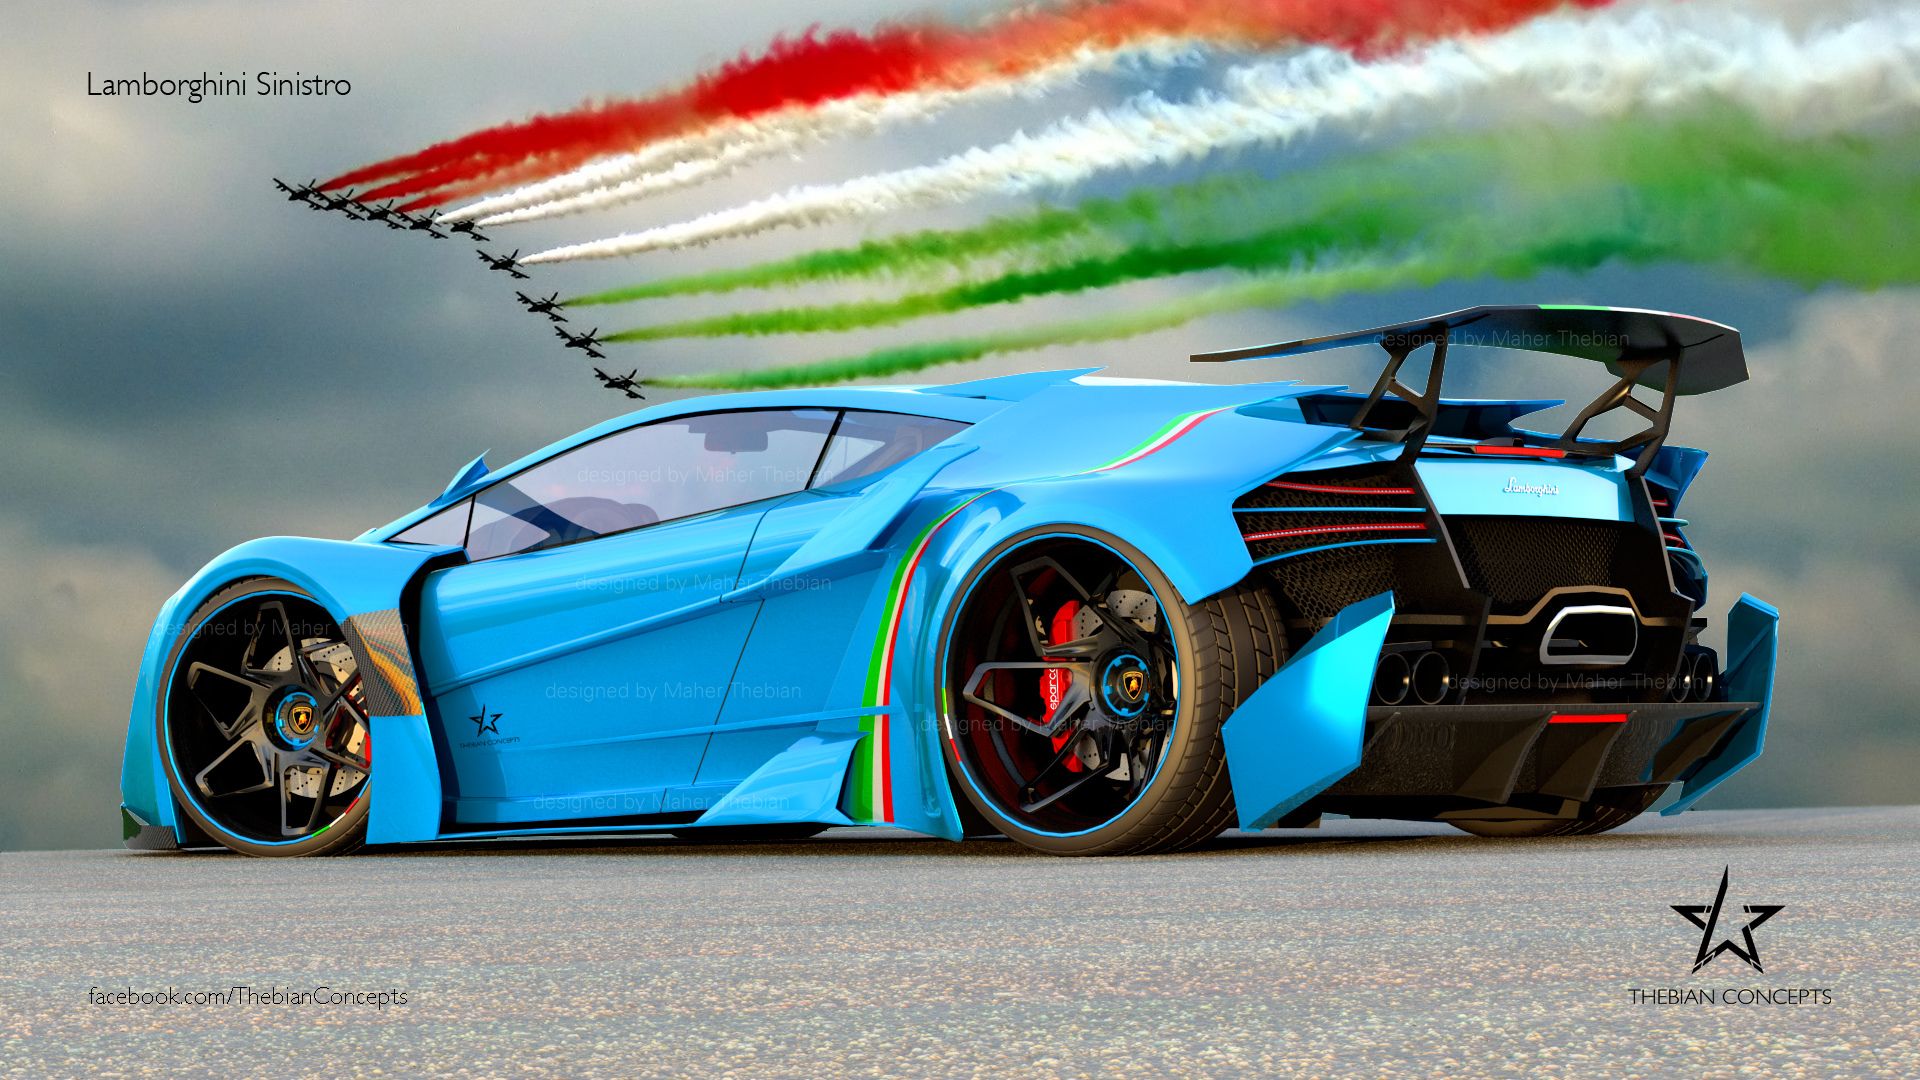 Lamborghini Sinistro Wallpaper, Widescreen HD Car Image